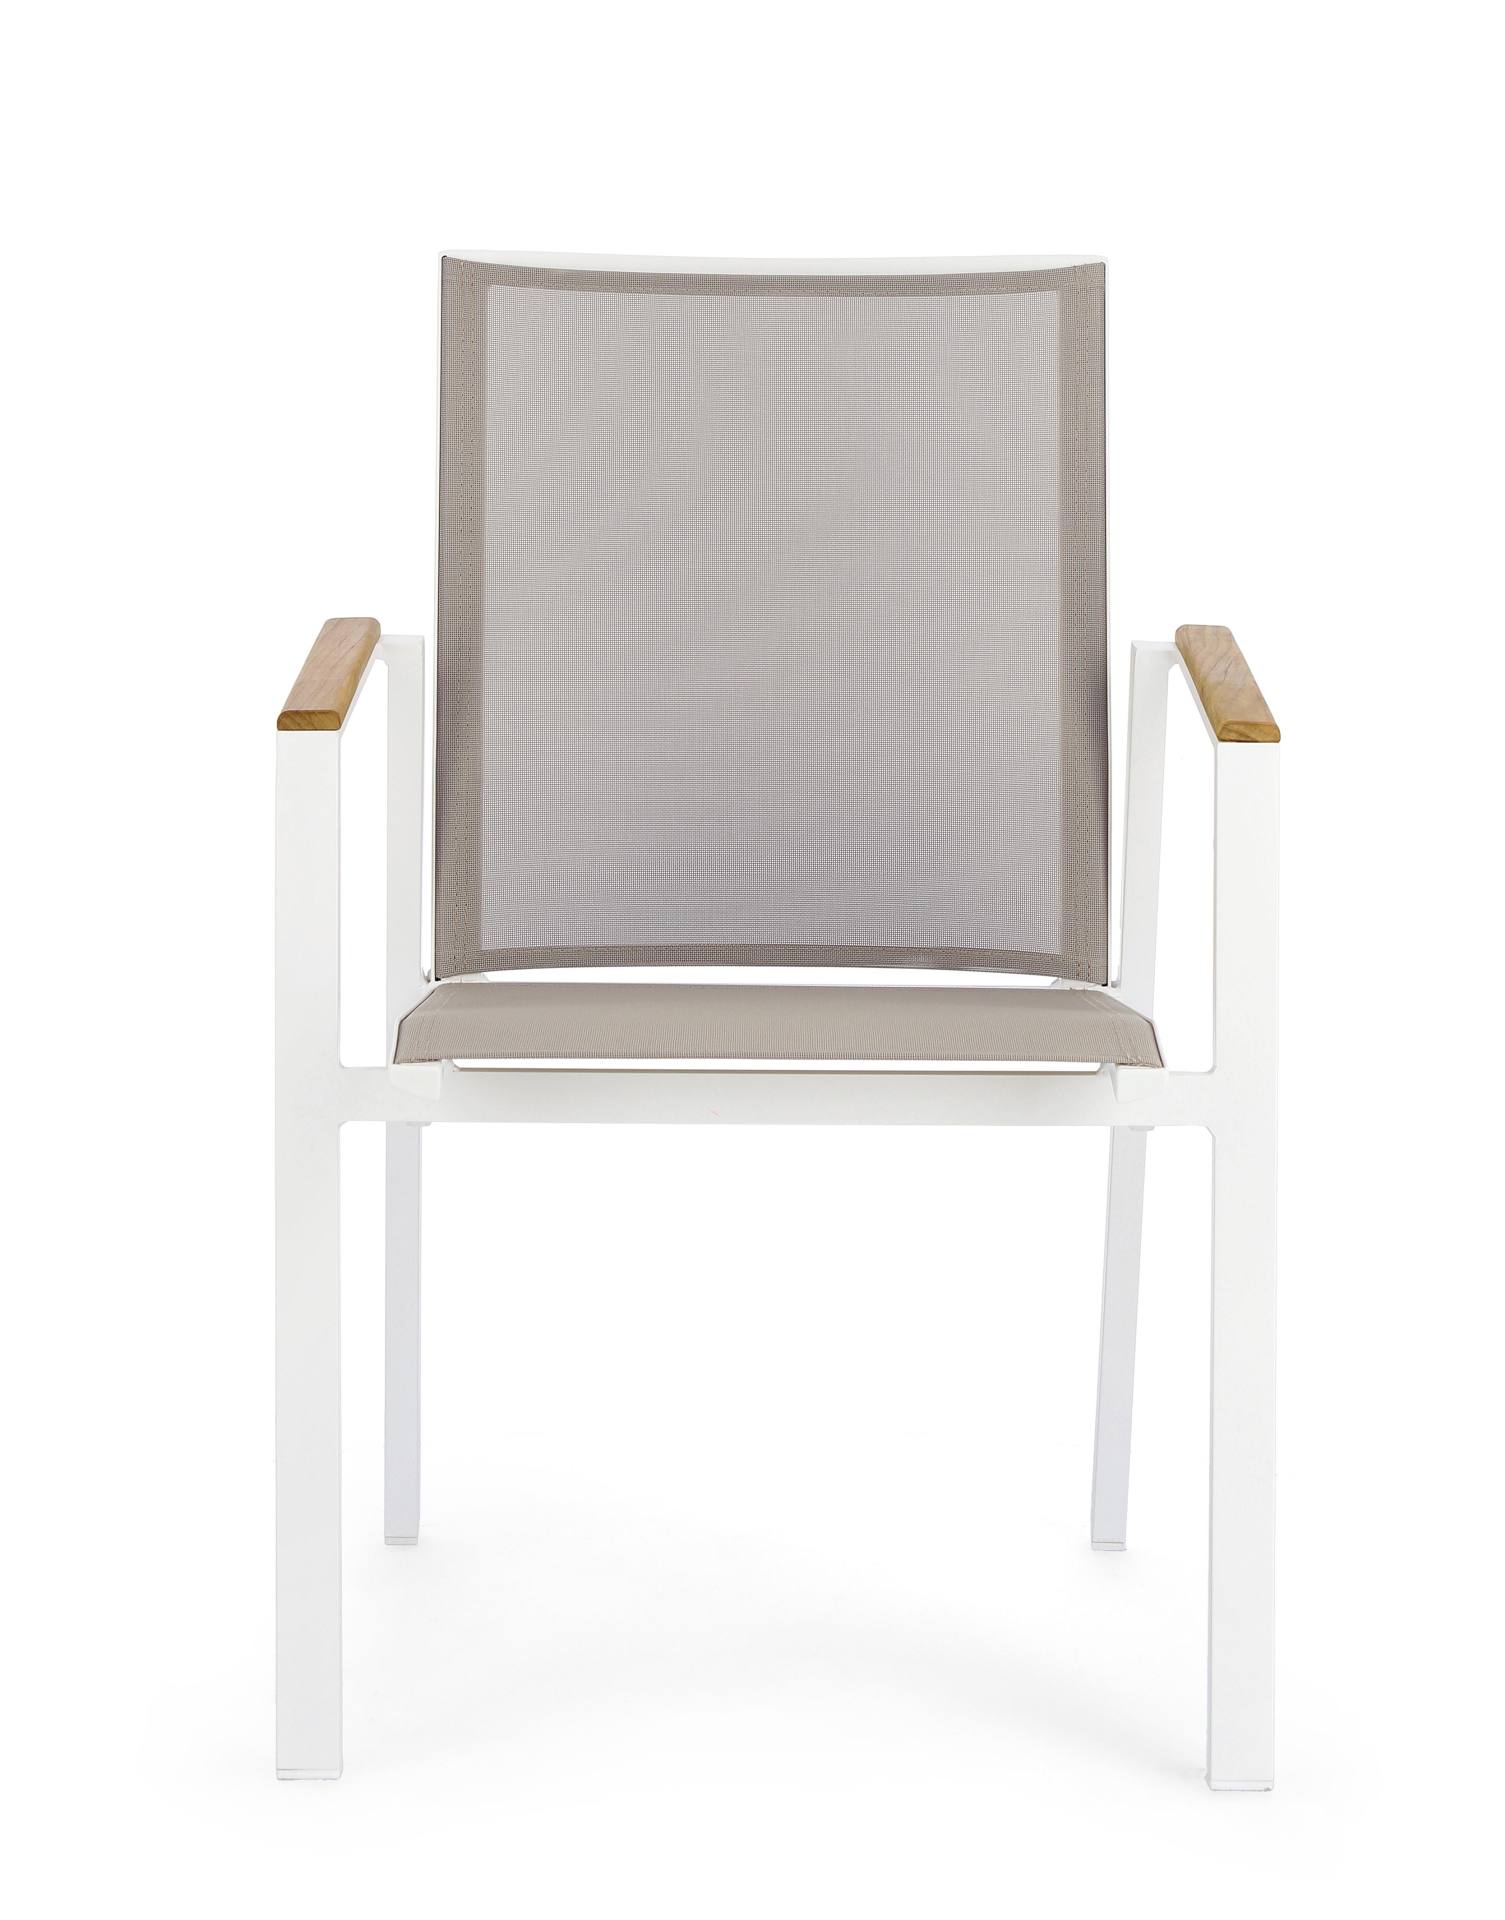 Der Gartenstuhl Cameron überzeugt mit seinem modernen Design. Gefertigt wurde er aus Textilene, welcher einen grauen Farbton besitzt. Das Gestell ist aus Aluminium und hat eine weiße Farbe. Der Stuhl verfügt über eine Sitzhöhe von 44 cm und ist für den Ou